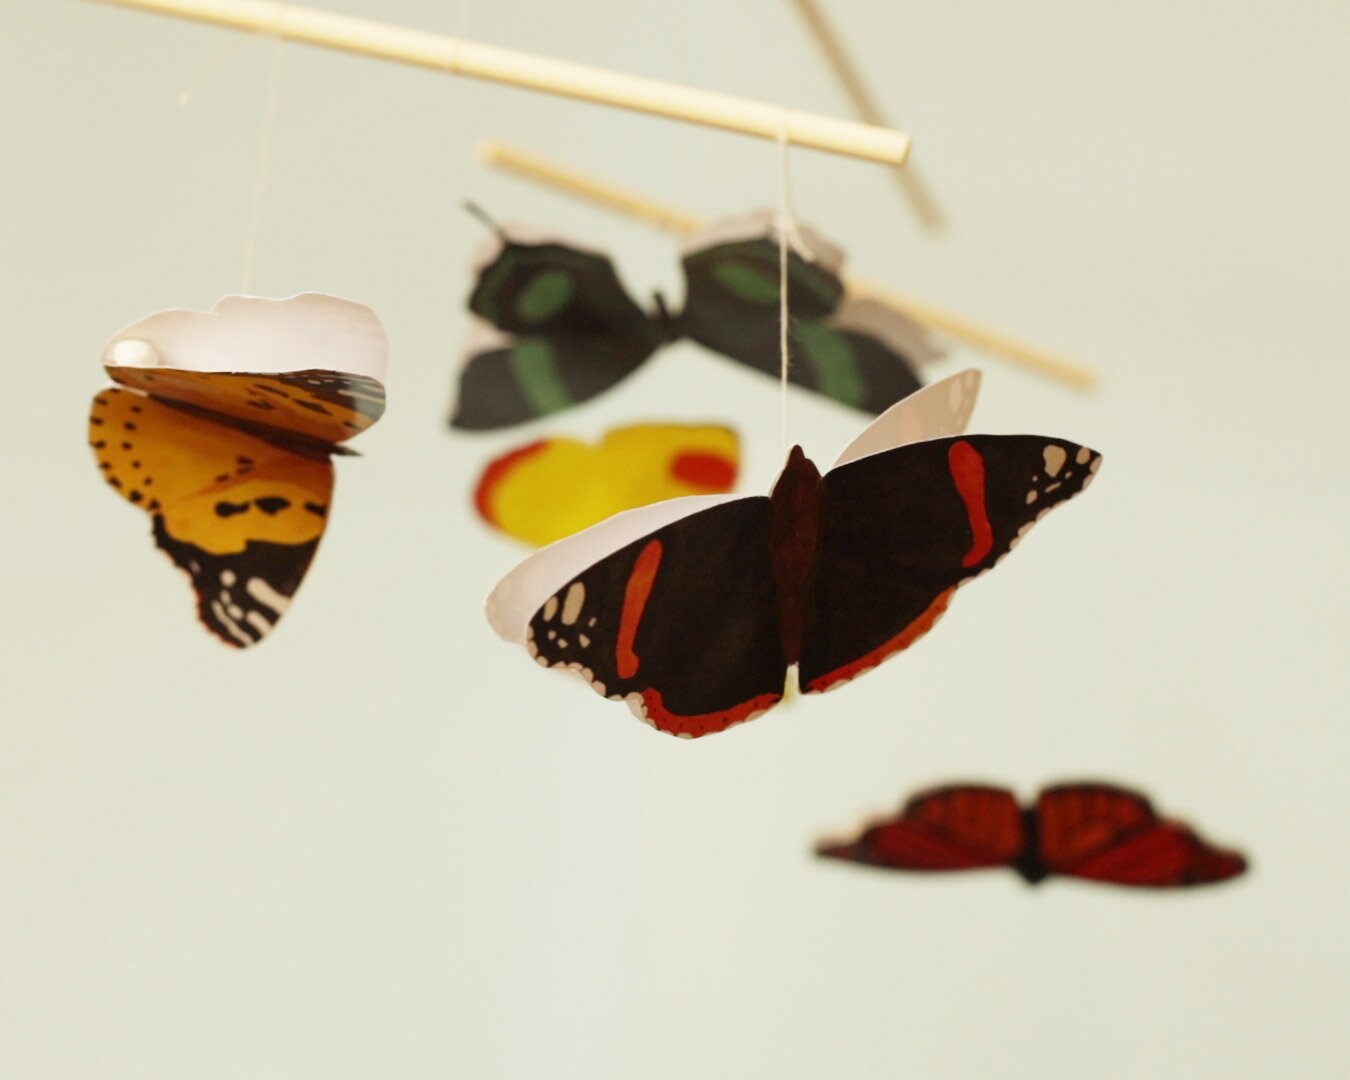 Monarch Butterfly Felt Mobile Kit Butterfly Baby Mobile DIY Baby Mobile  Felt Monarch Nature Themed Nursery Baby Shower Gift 